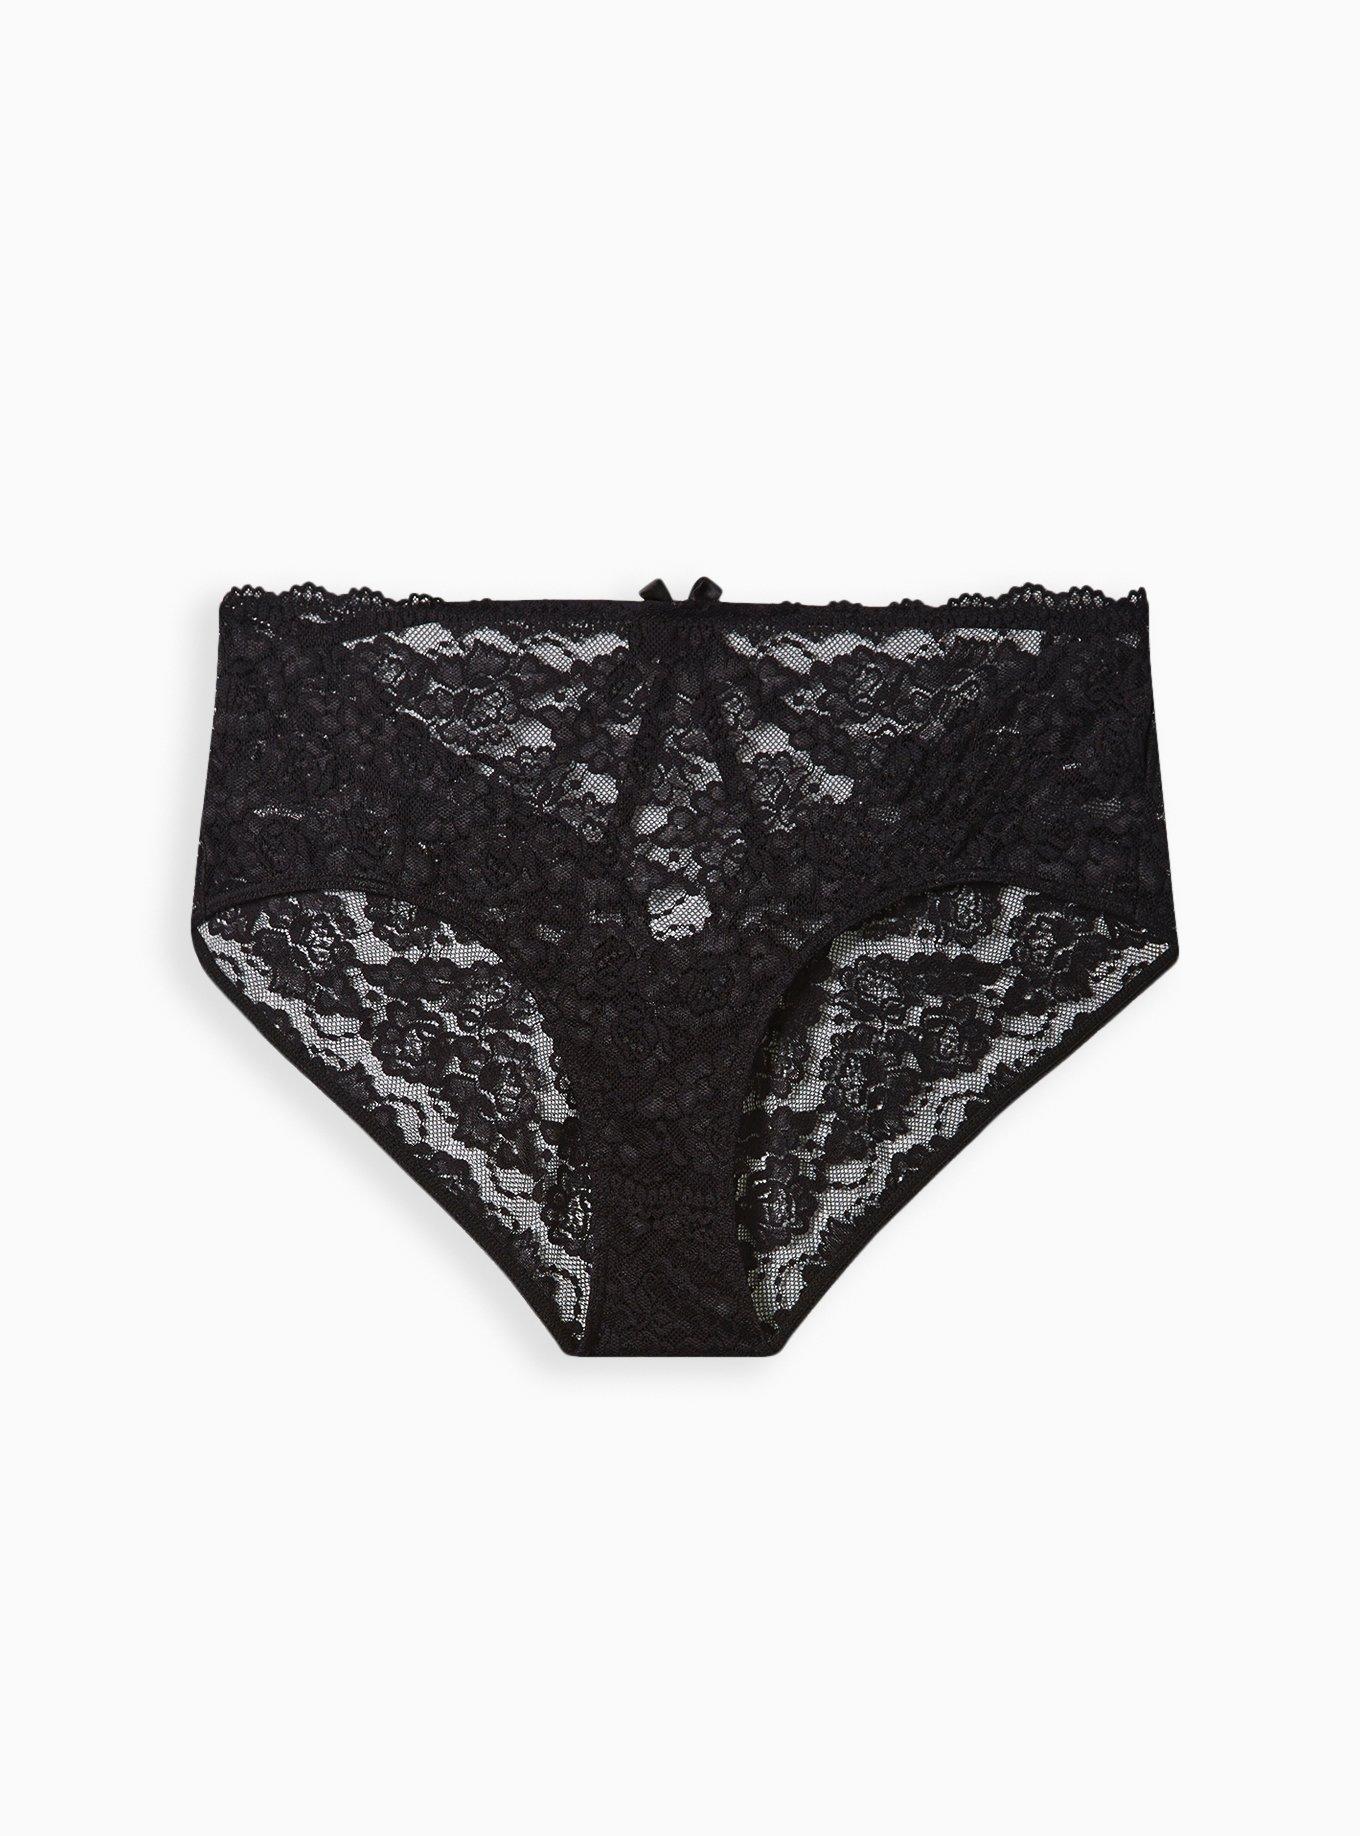 Torrid Hipster Panties Black Floral 💛 Pink Lace Ladies Plus Underwear NWT 2  2x